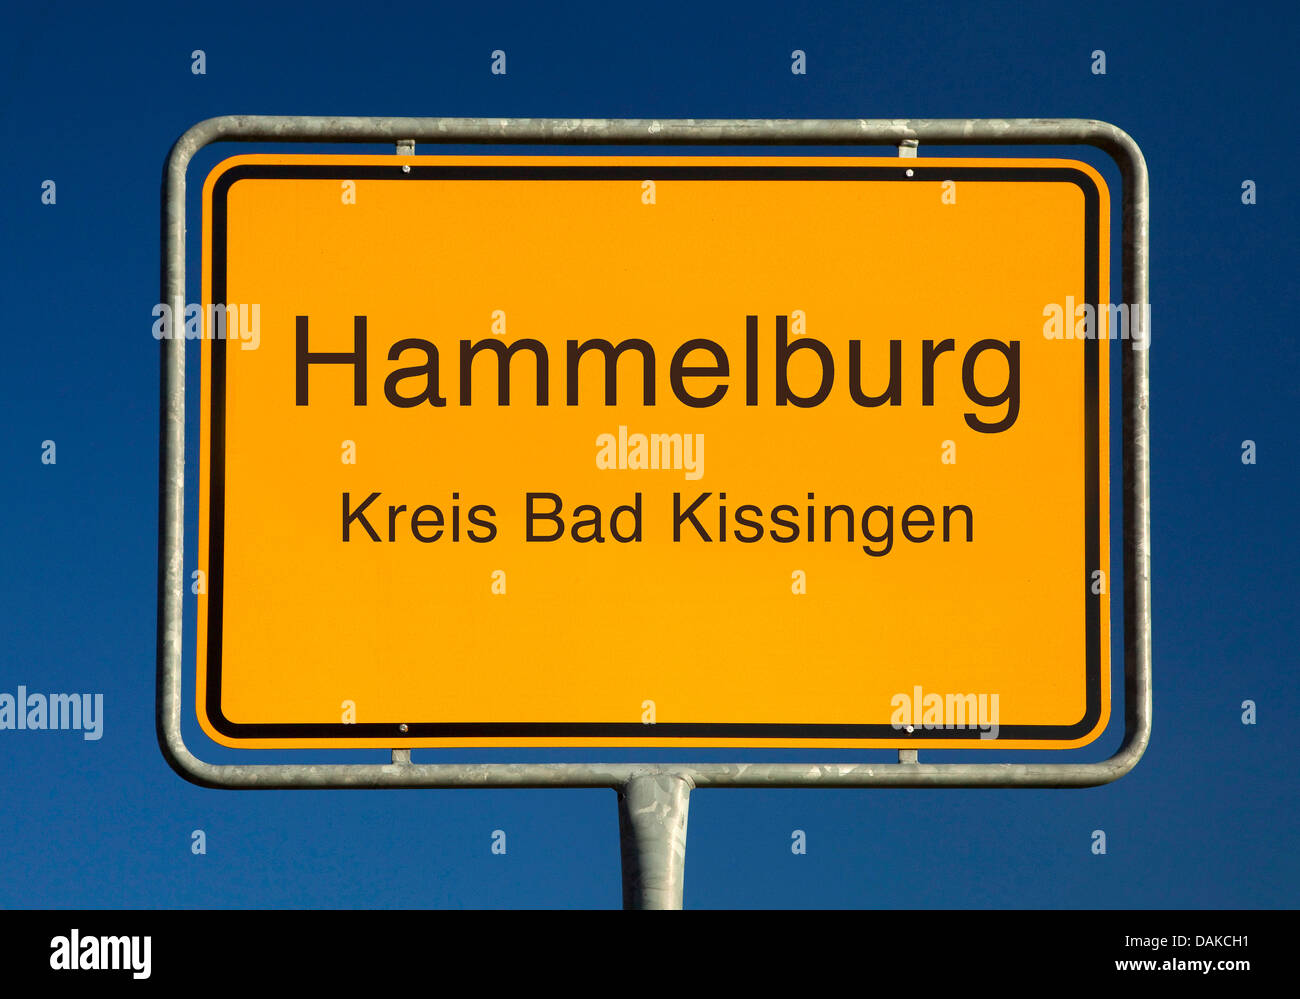 Hammelburg Ort Namensschild, Hammelburg, Kreis Bad Kissingen, Bayern, Deutschland Stockfoto